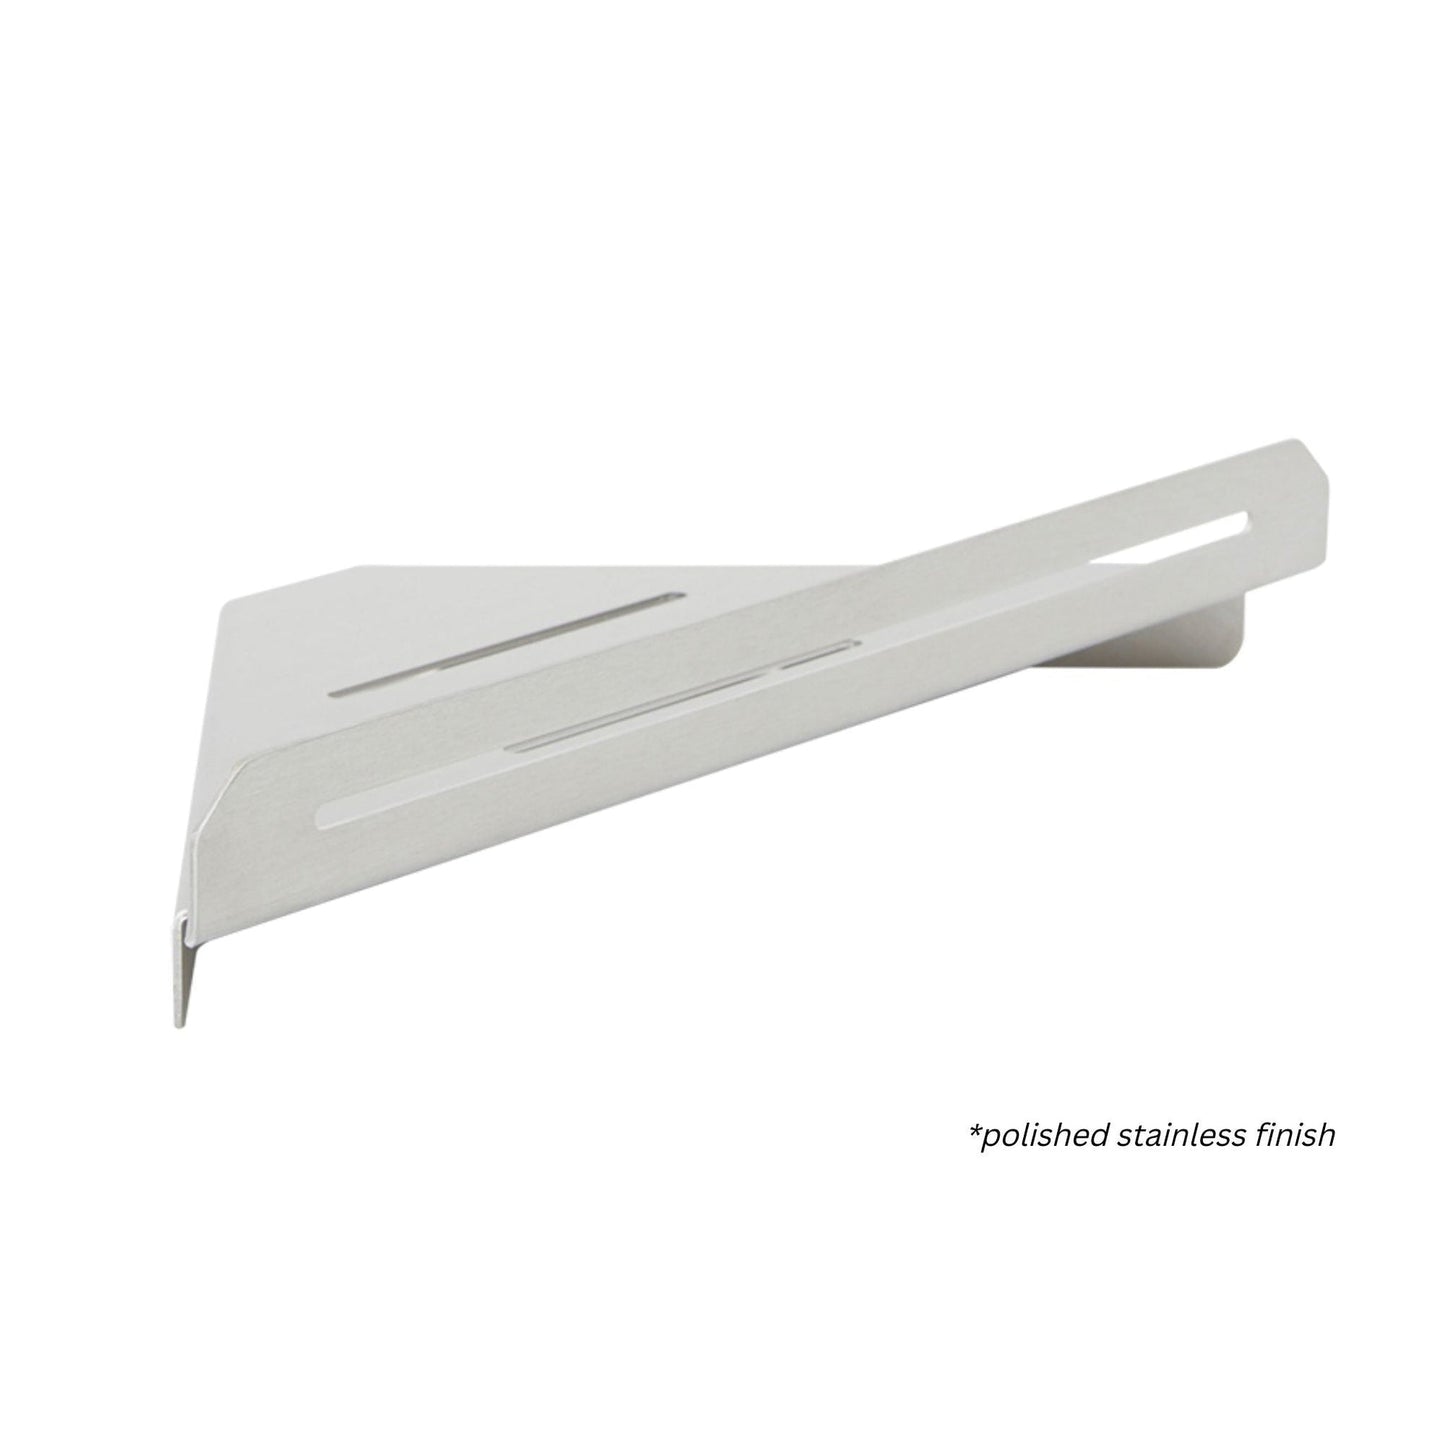 Seachrome Coronado 700 Series 14" x 8" Corner Shower Shelf in White Powder Coated Stainless Finish